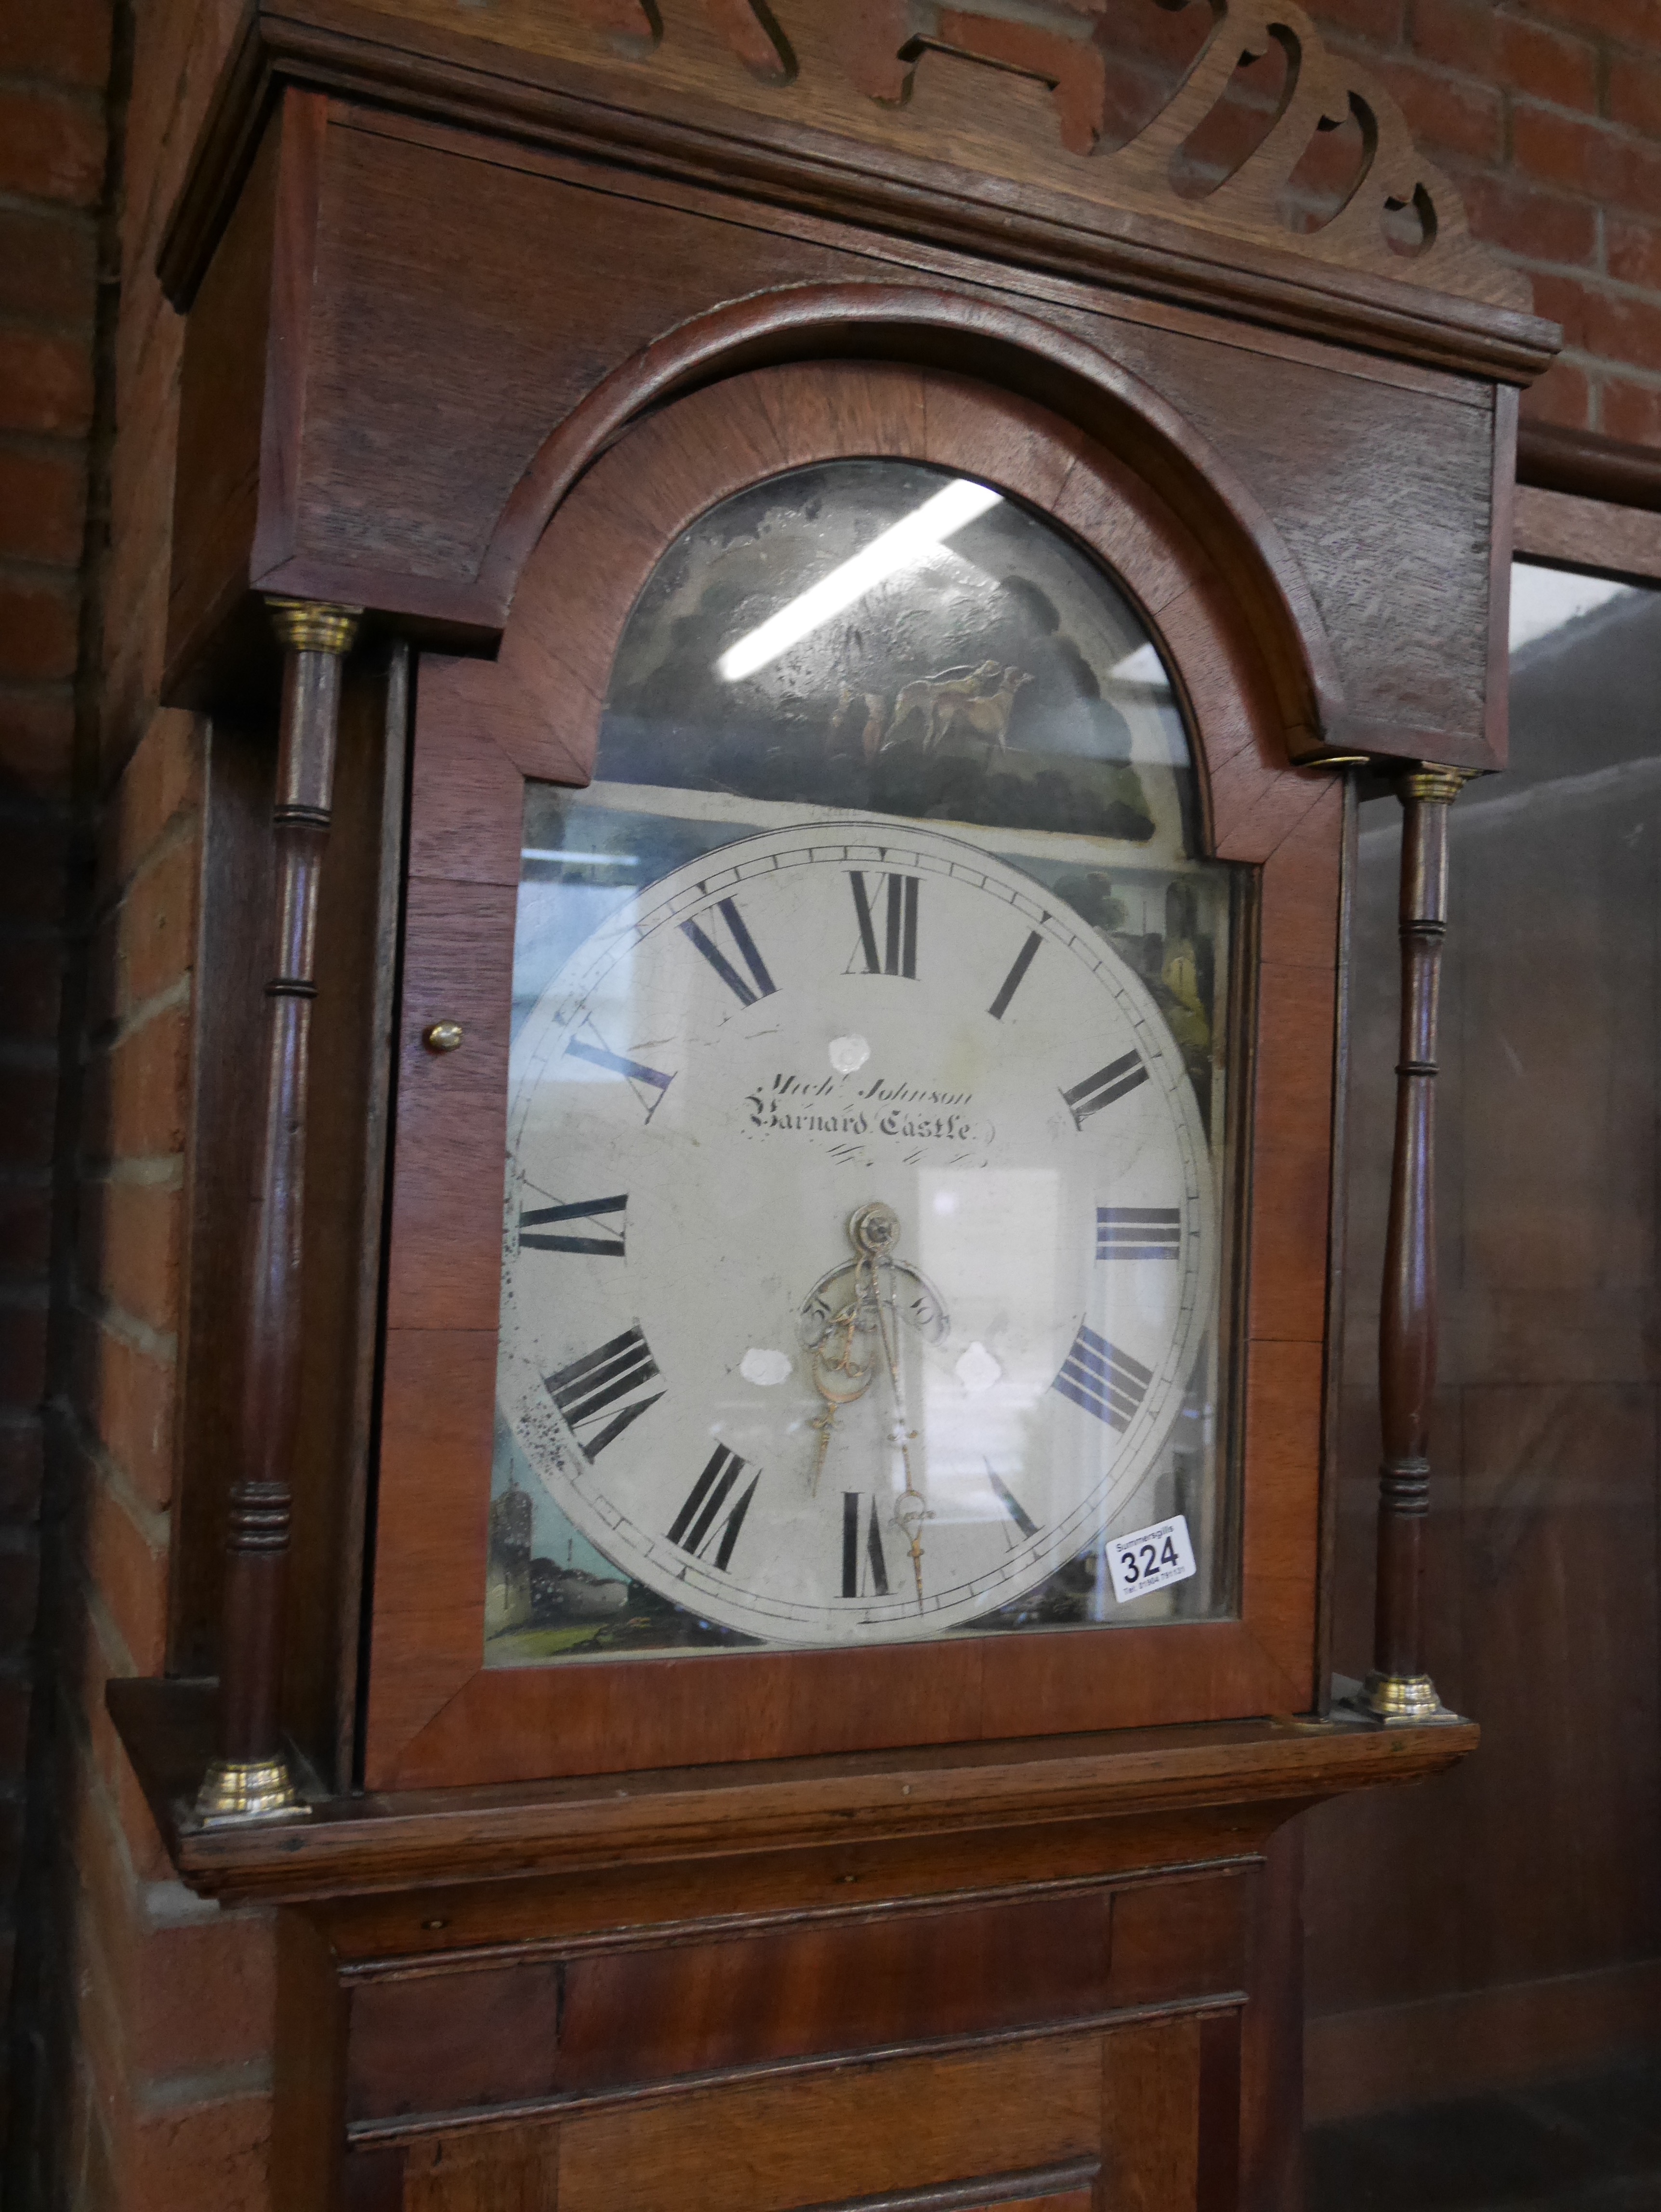 Oak long cased clock by Mich Johnson Barnard Castle - Image 3 of 3